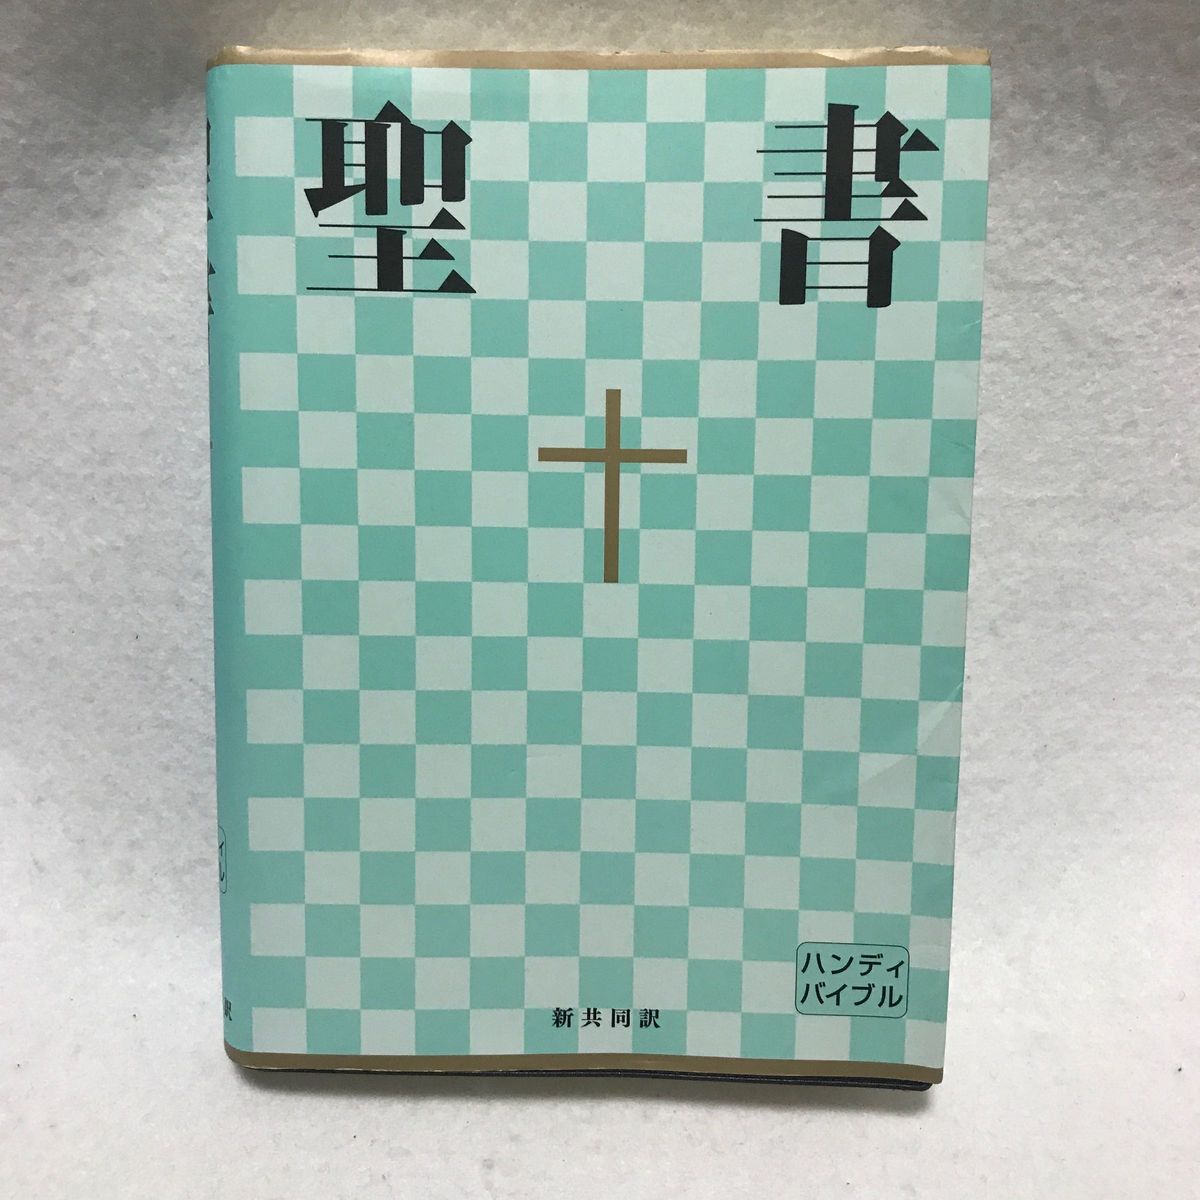 聖書 : 新共同訳 聖書 ハンディ バイブル 日本聖書協会